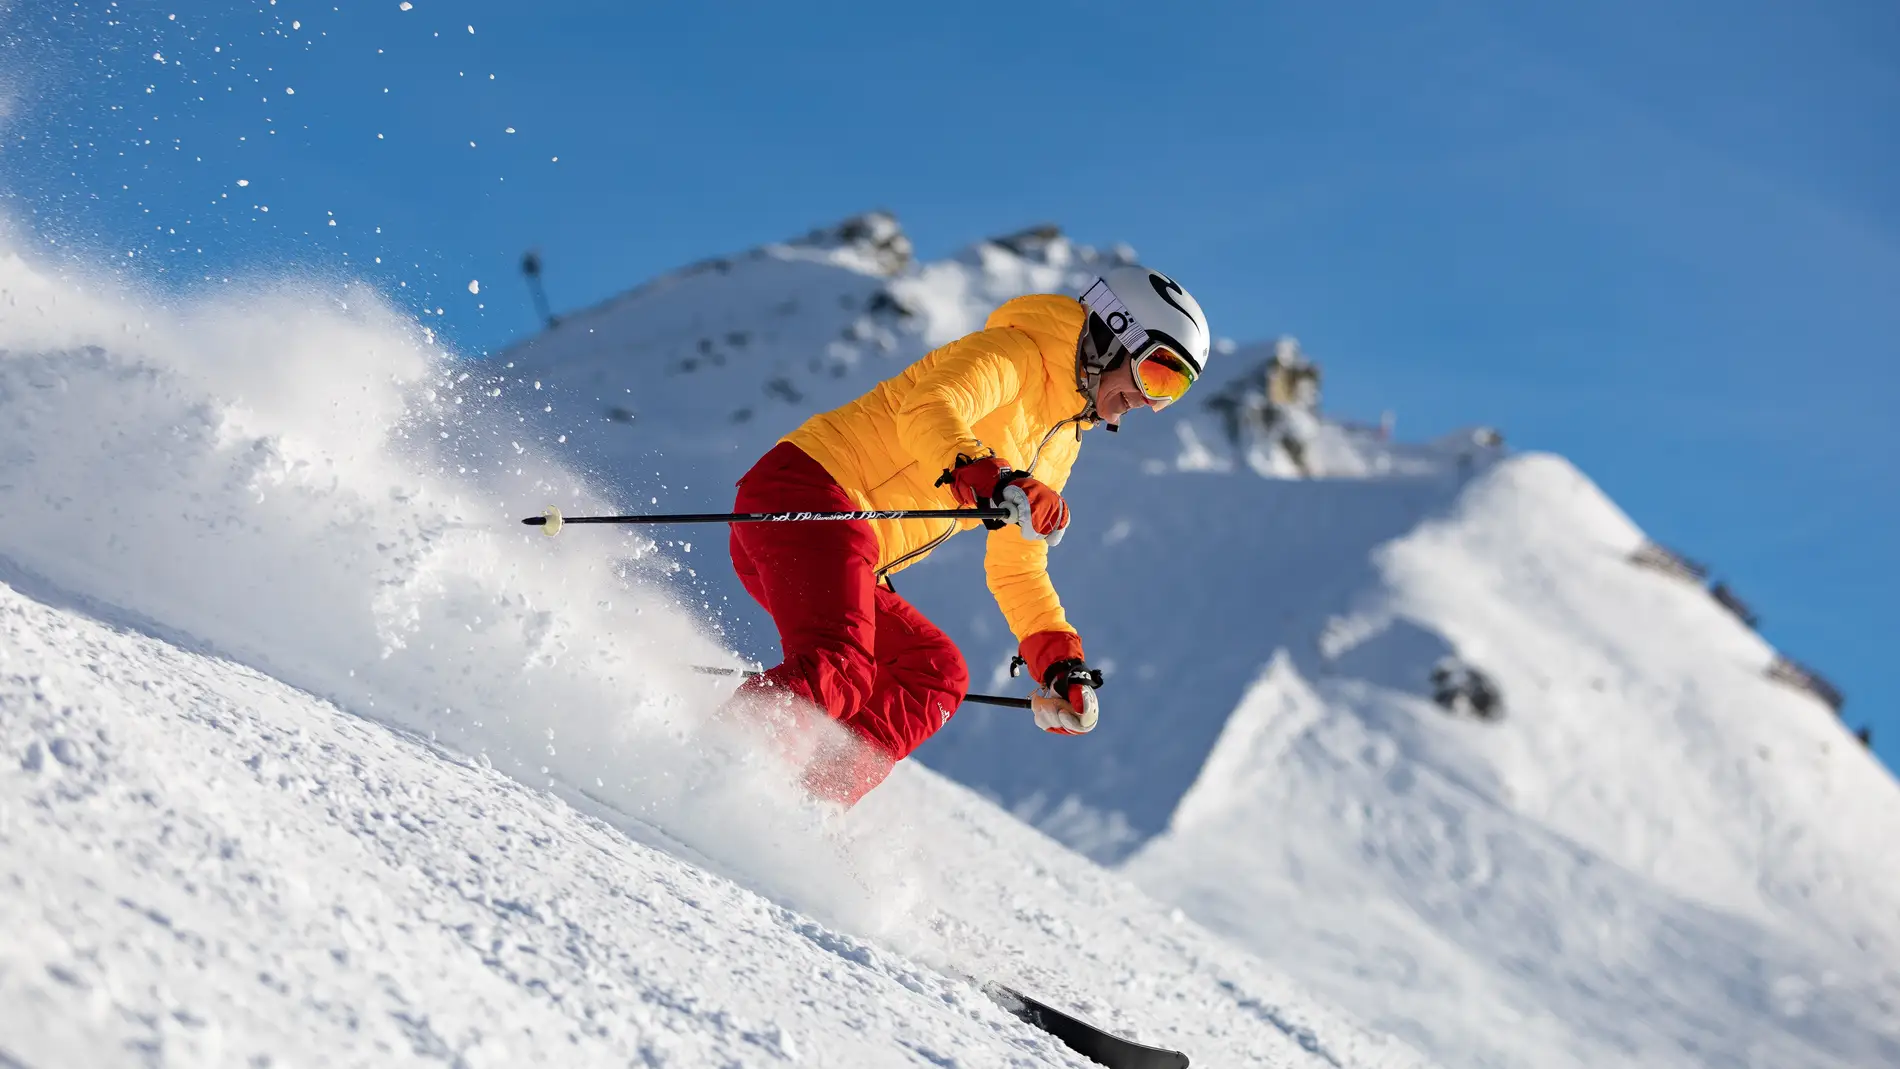 10 básicos de moda para ir a esquiar en este invierno